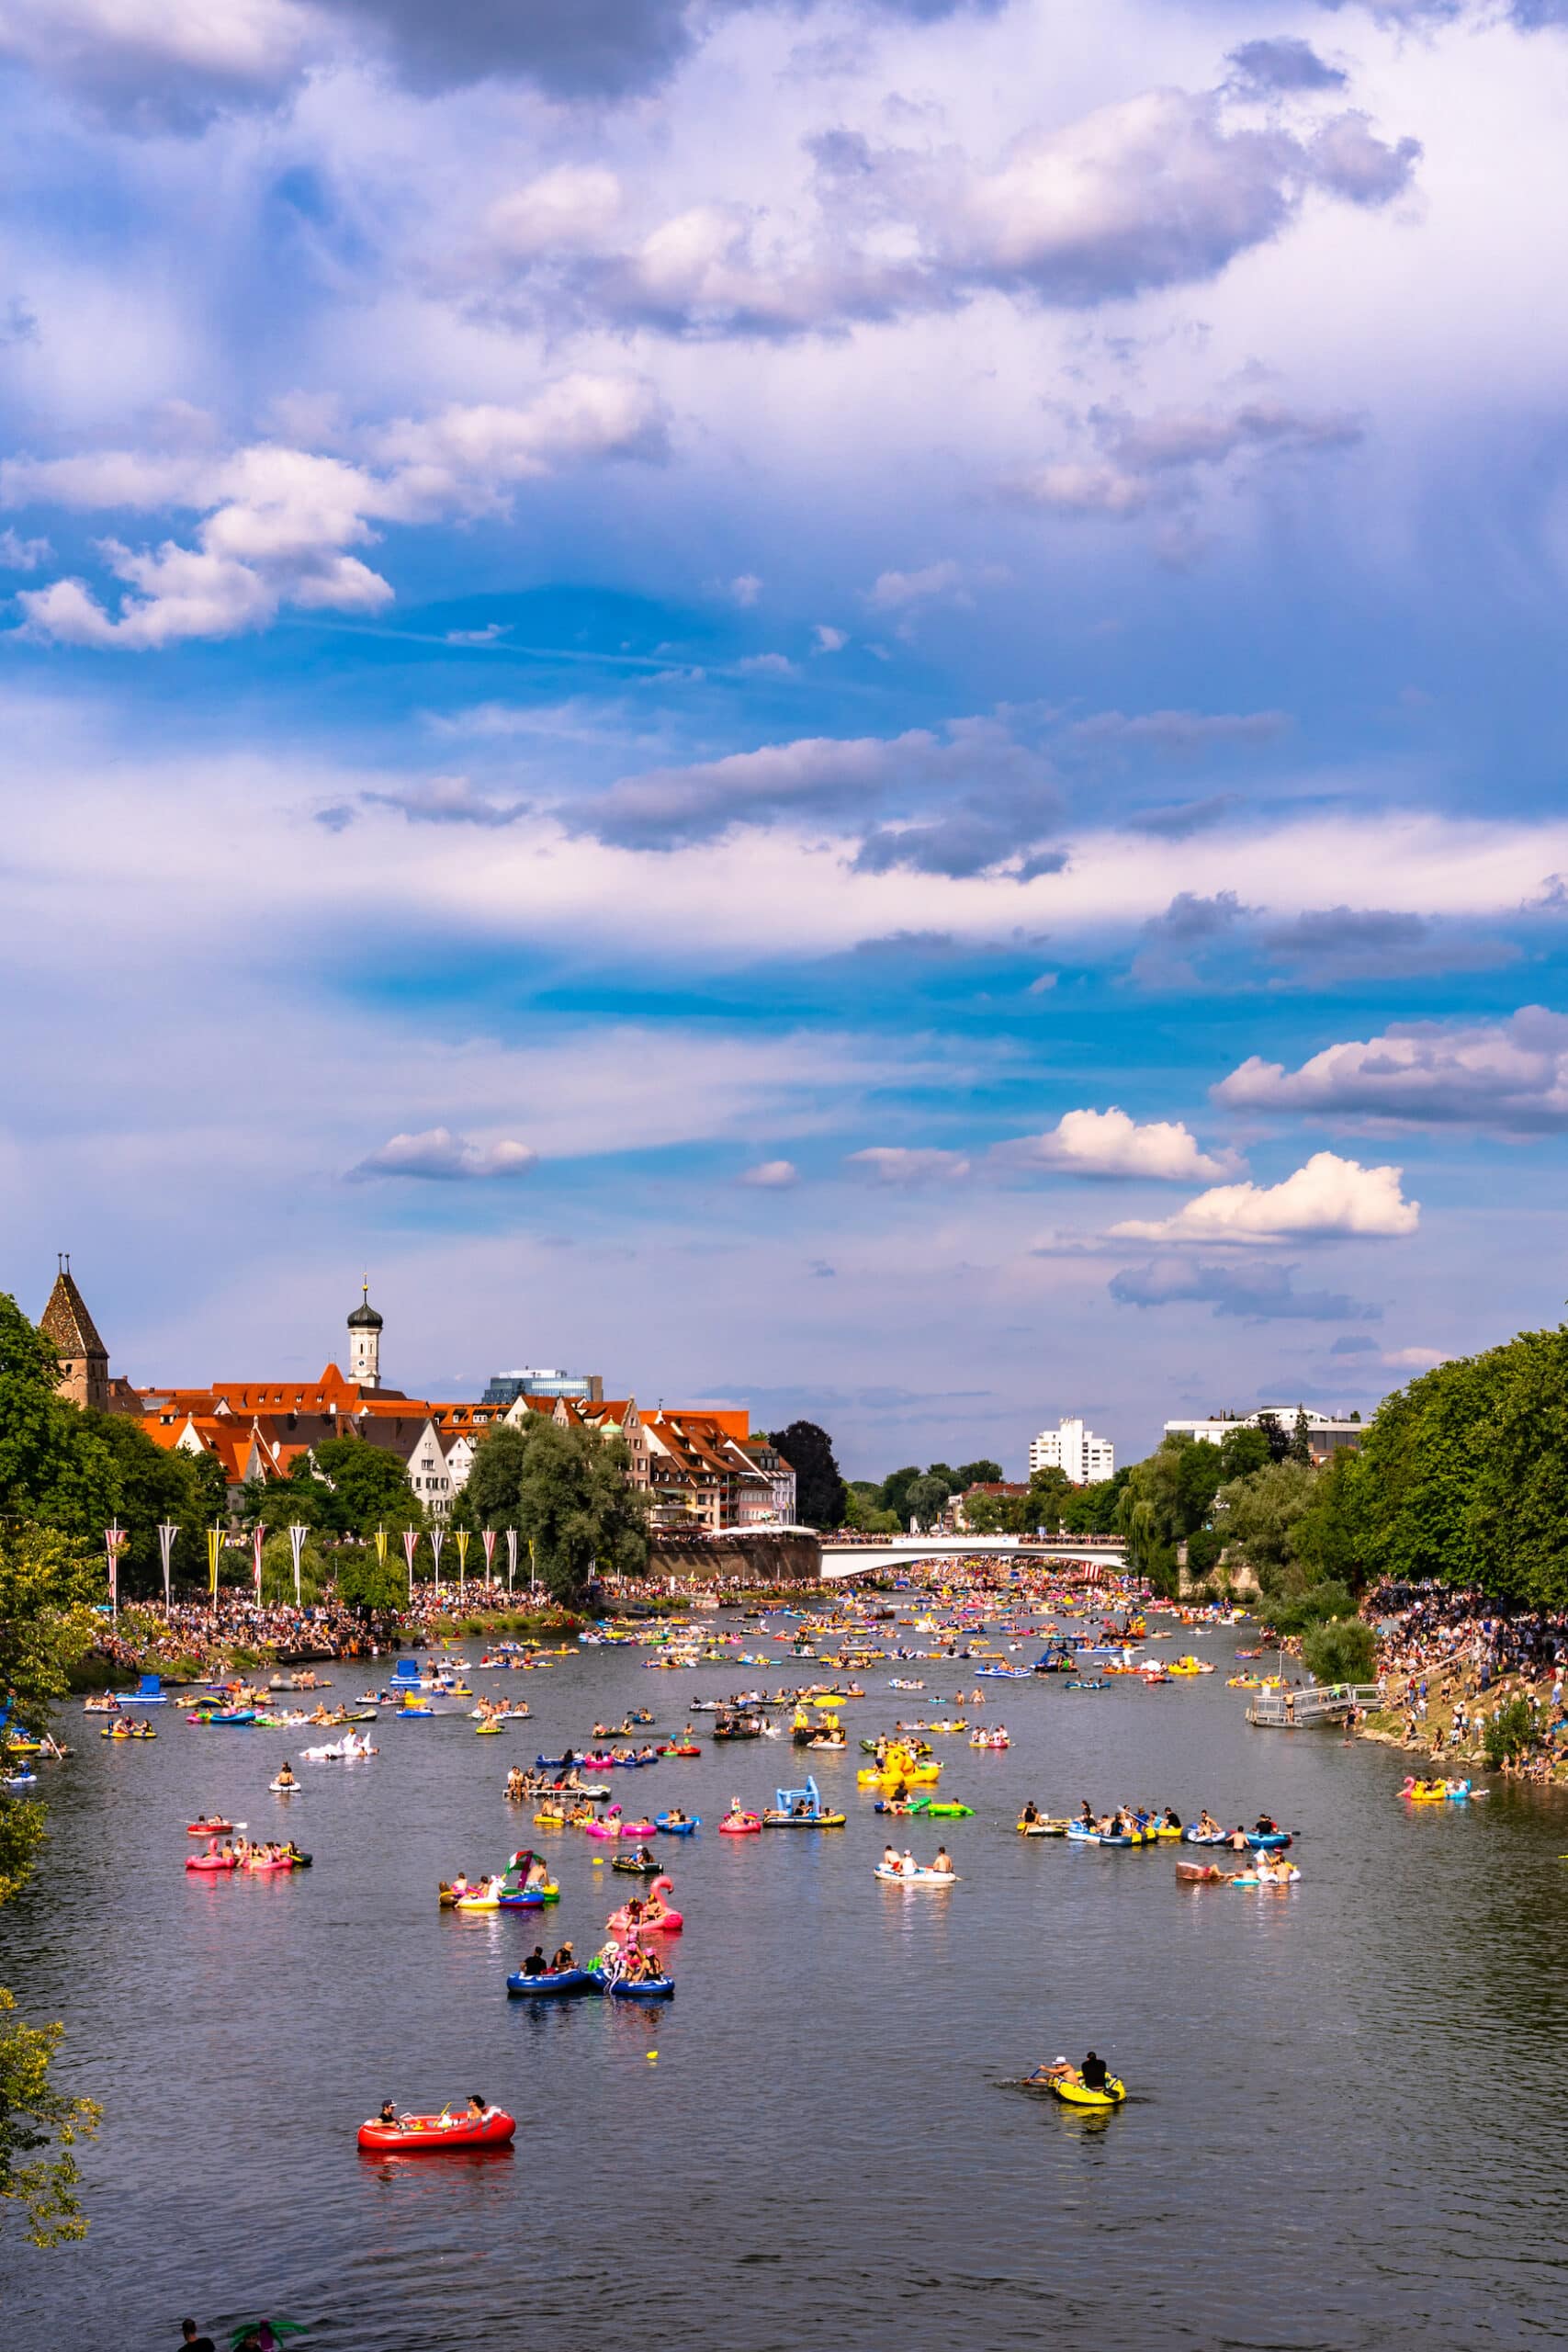 Nabada Schwimmen in Ulm auf der Donau 